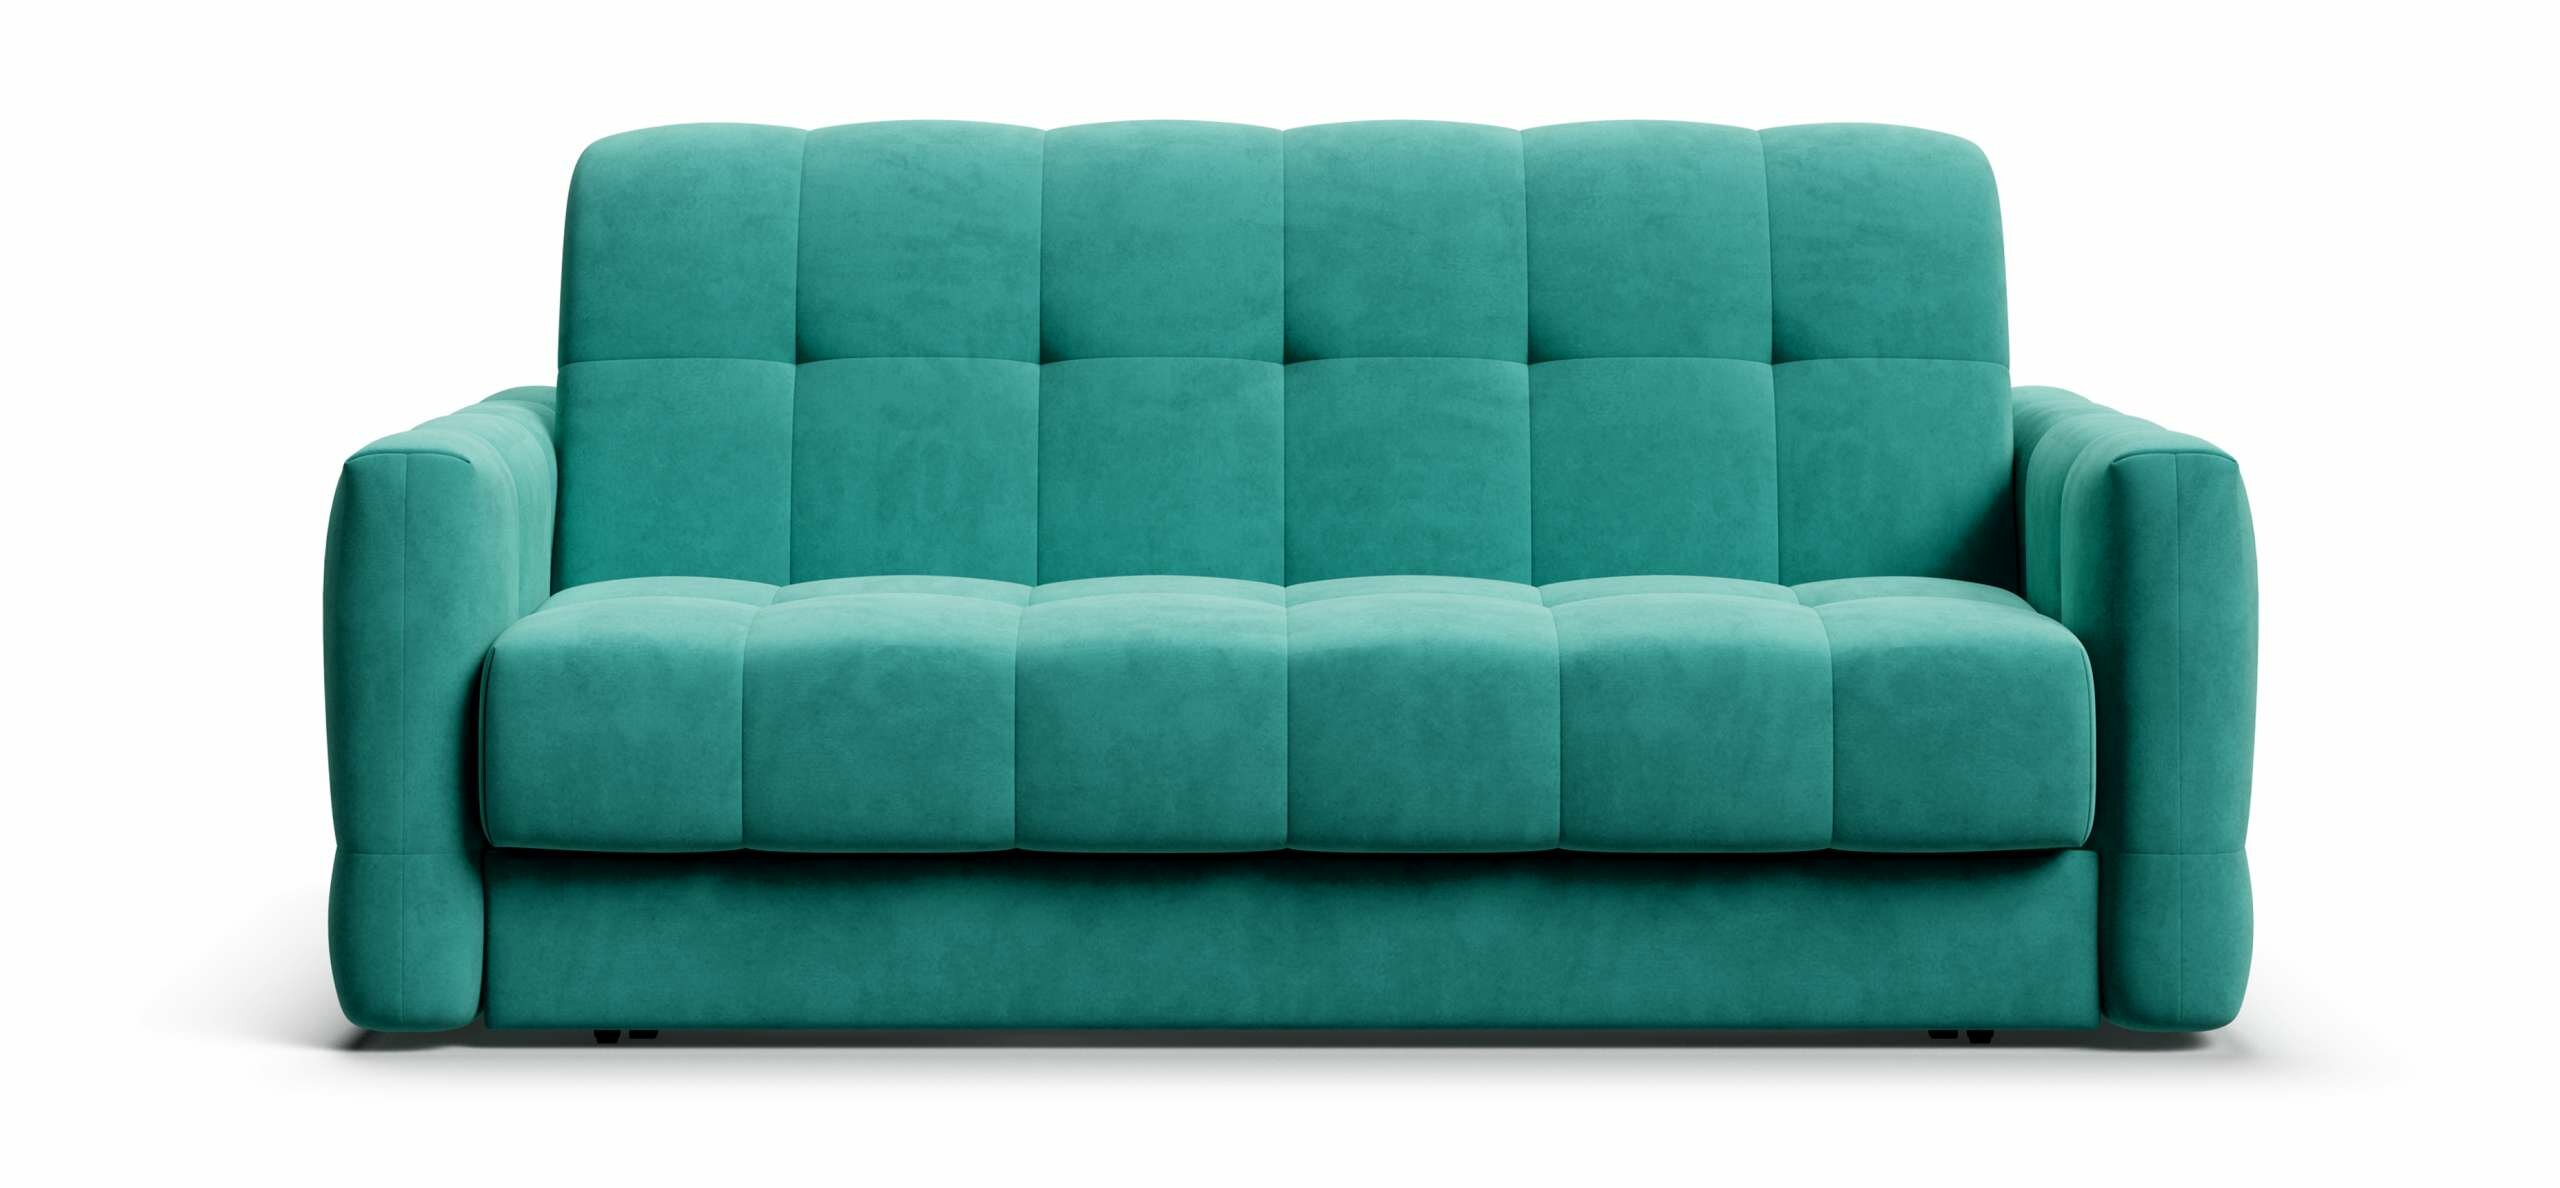 Выкатной диван-кровать с ящиком для хранения Boss Sleep 160, аккордеон, велюр Monolit аква, 203x119x91 см - фотография № 1